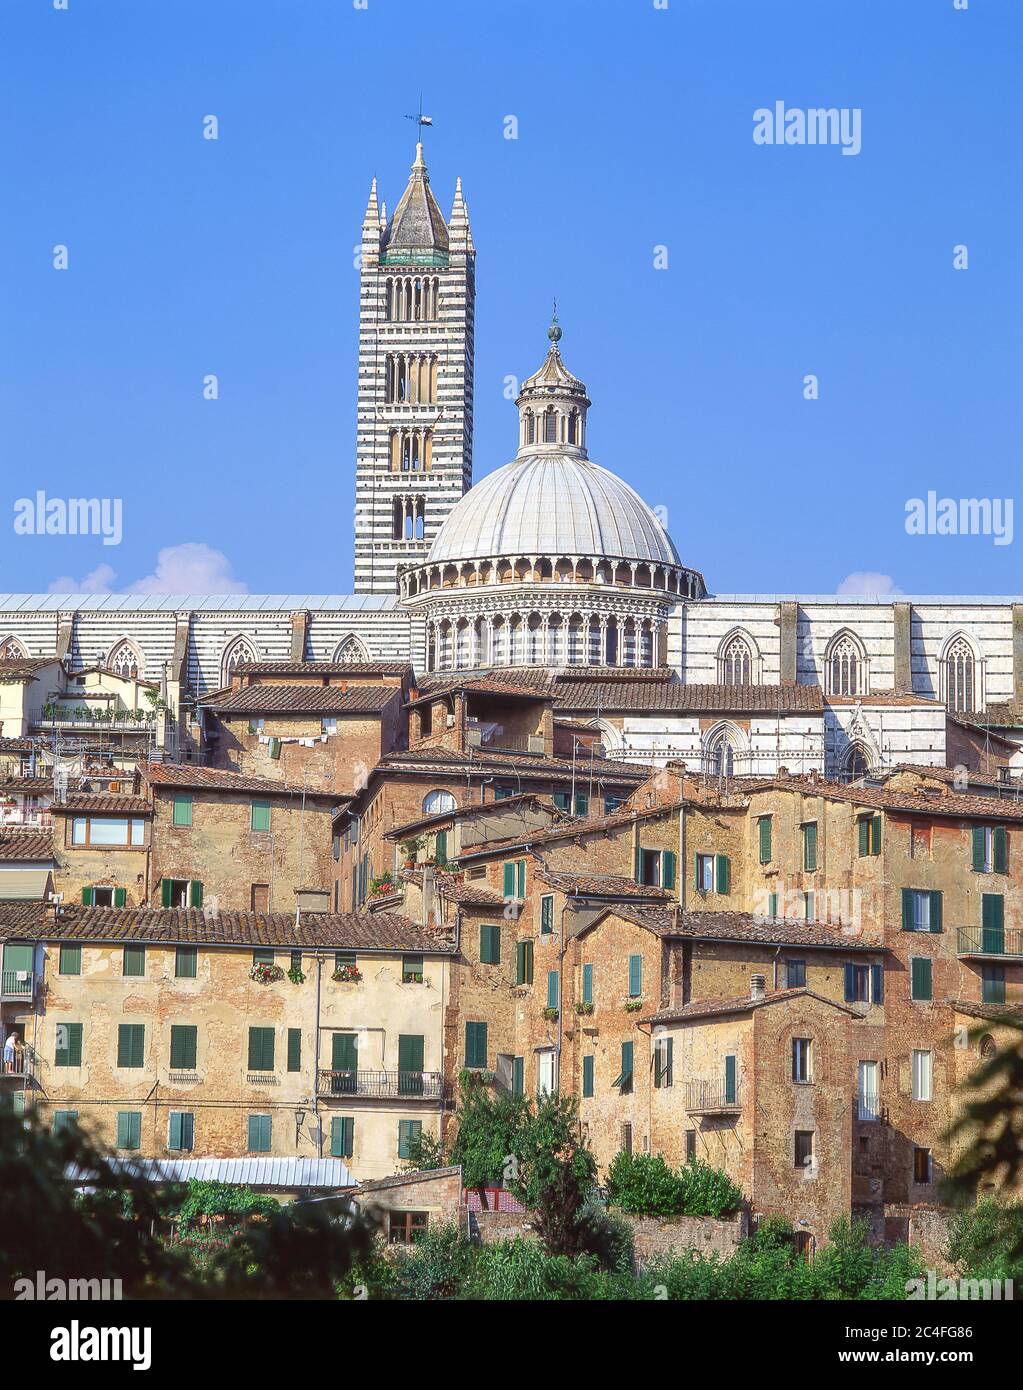 Vista del casco antiguo y del Duomo di Siena (Catedral de Siena), Siena (Siena), provincia de Siena, región de la Toscana, Italia Foto de stock